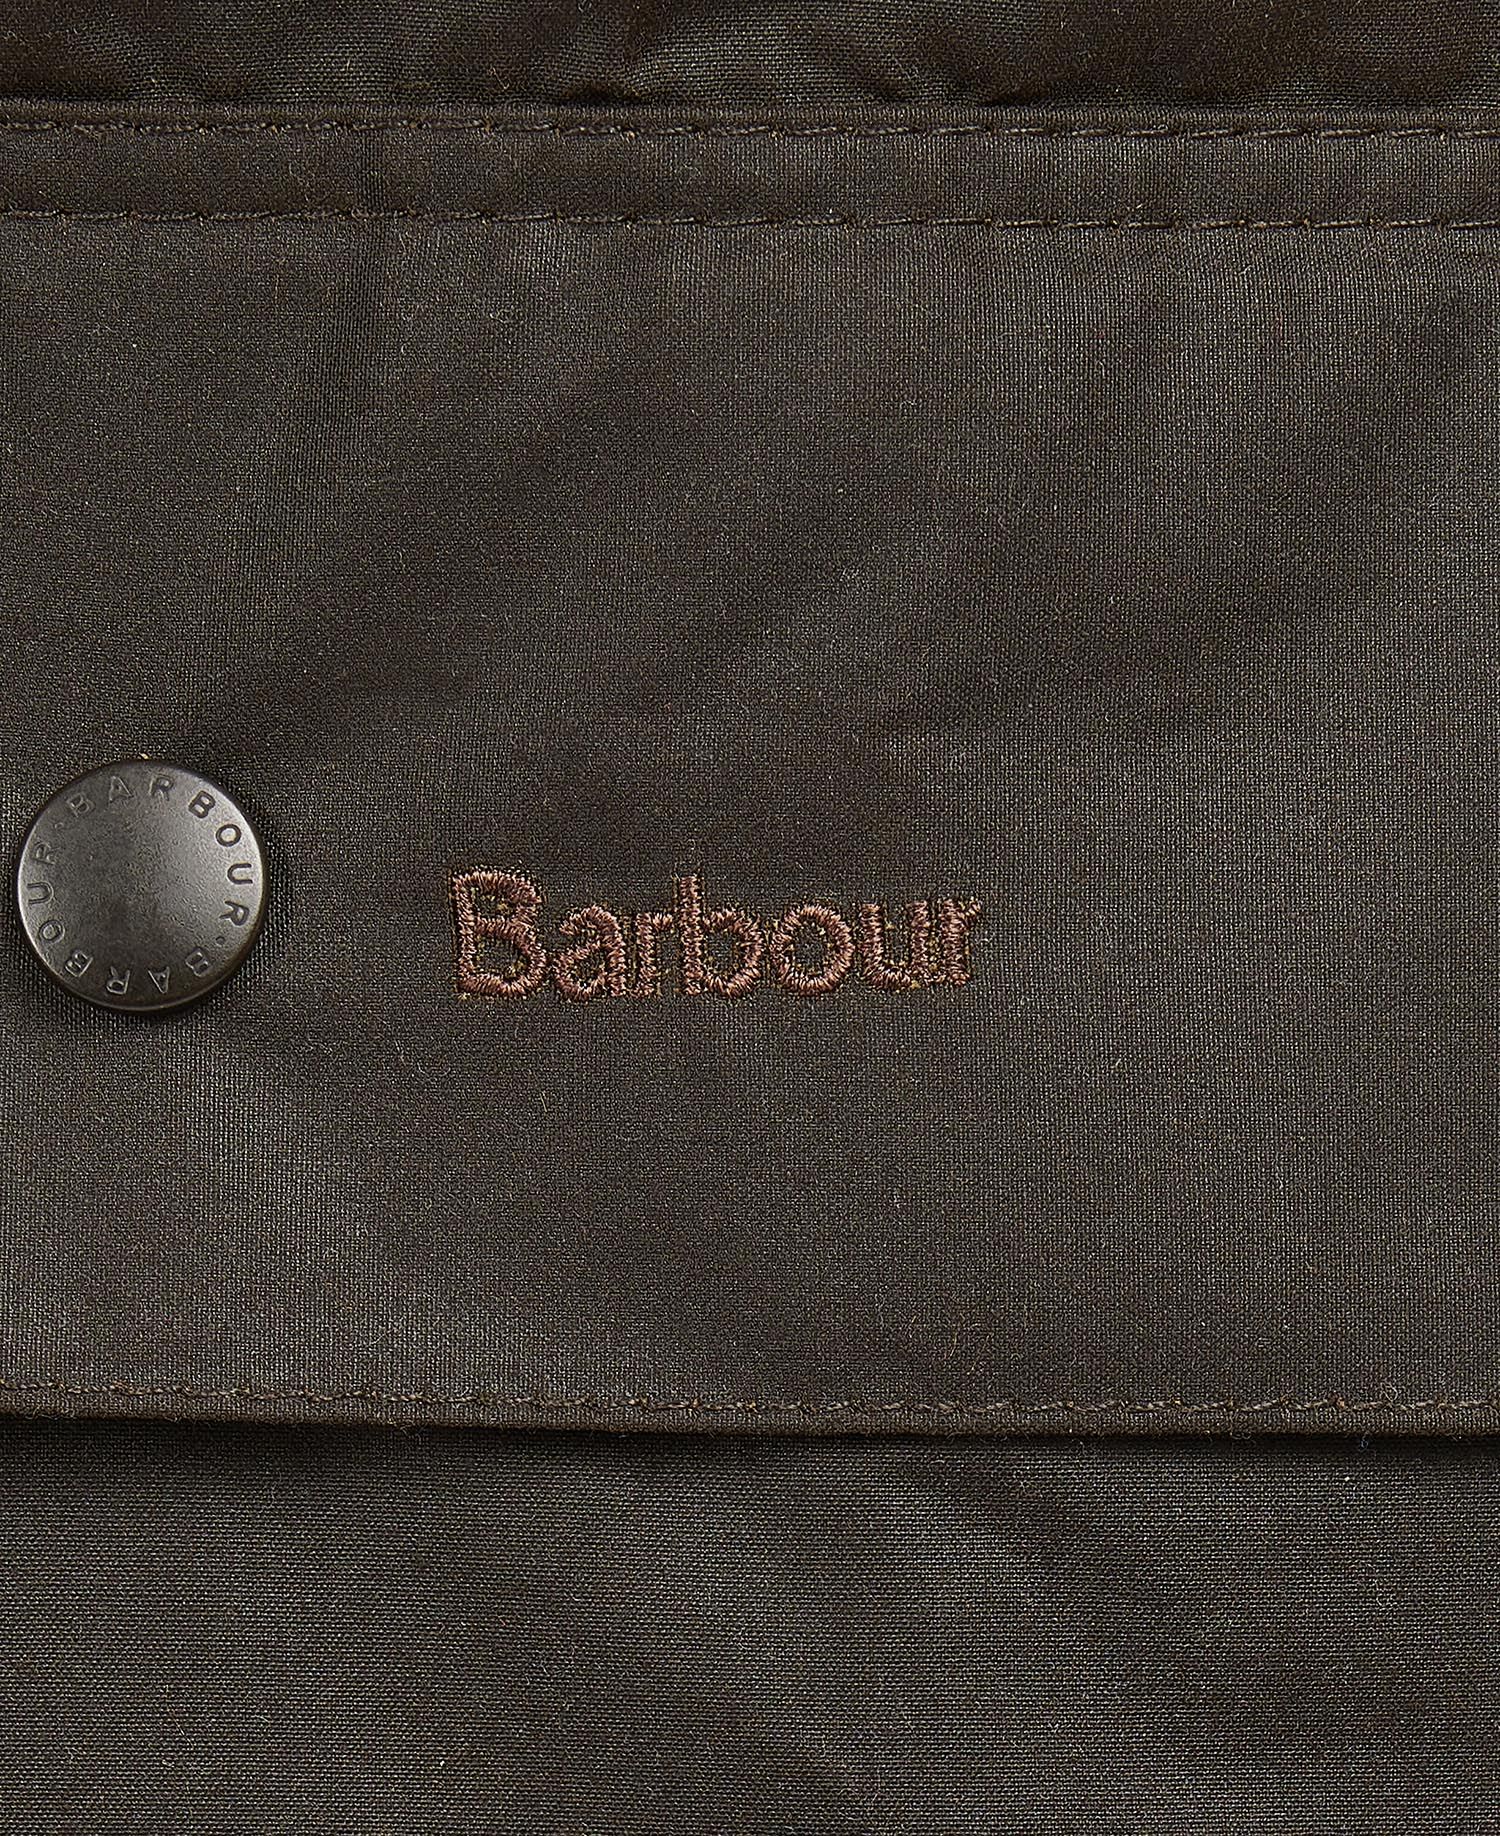 Beaufort Wax Jacket - Men's by Barbour